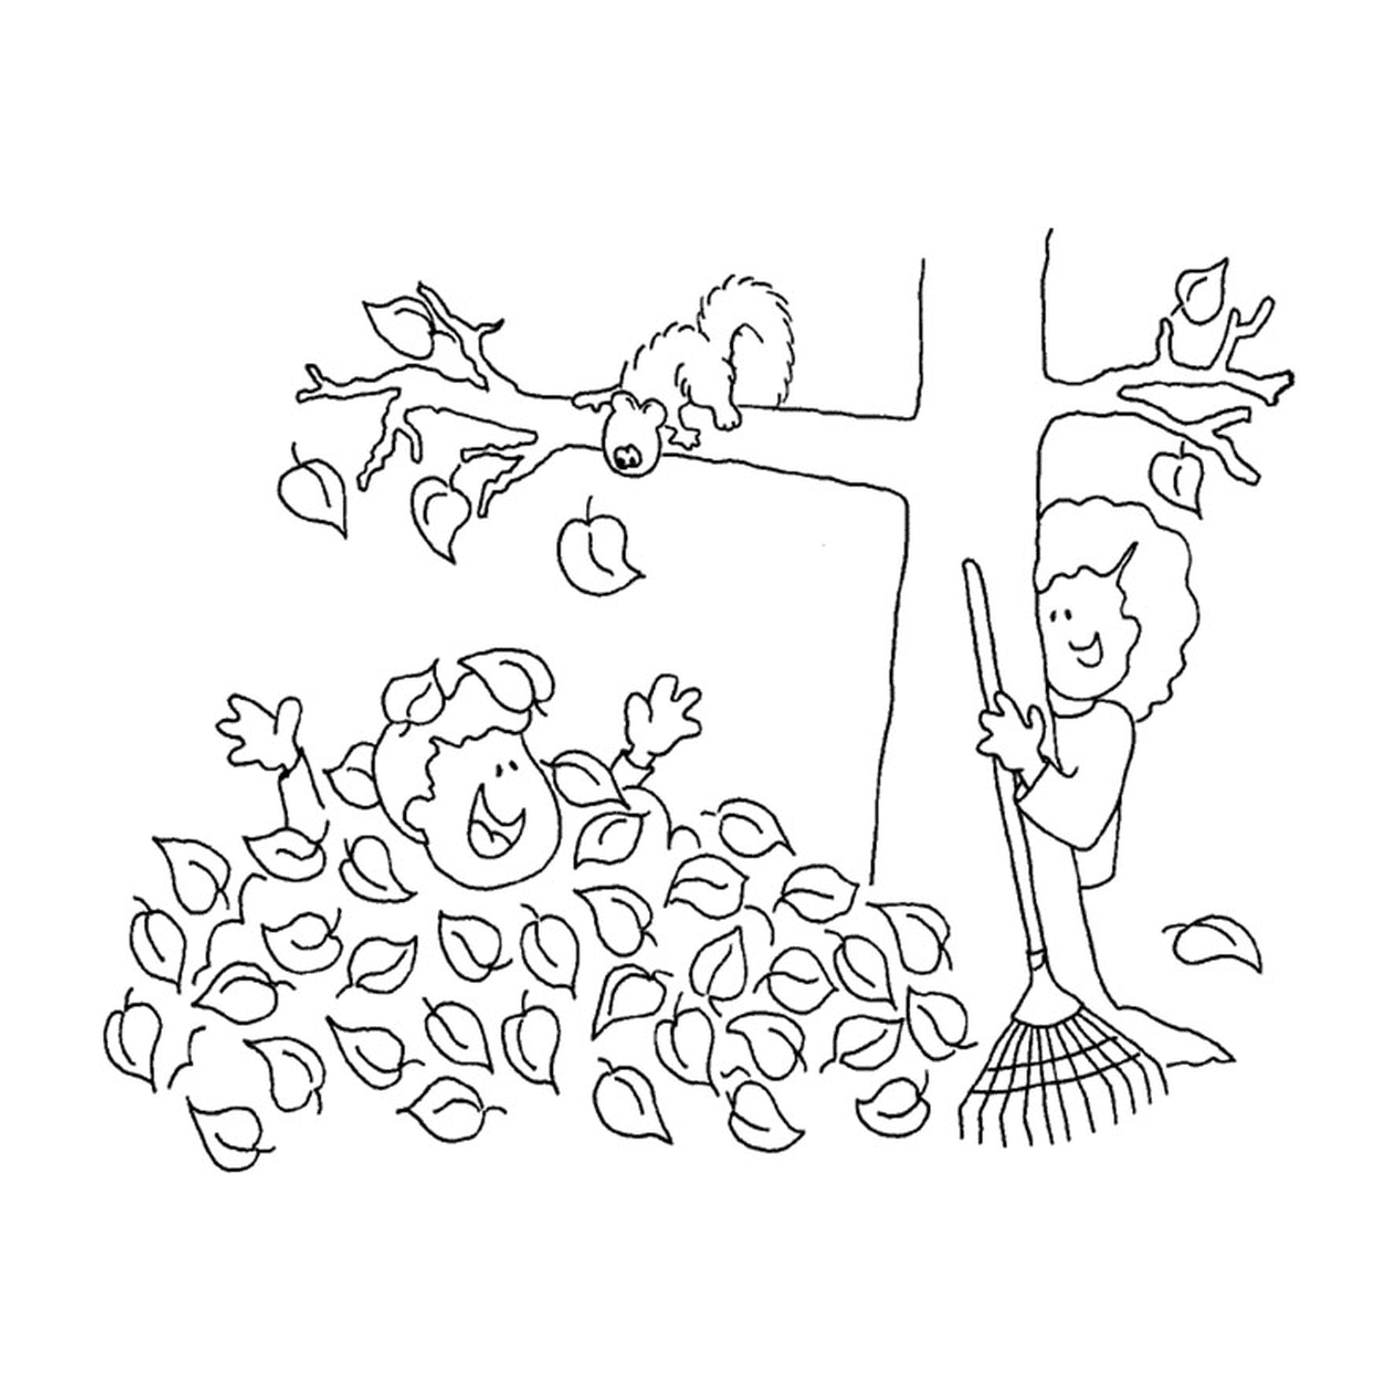  Um menino e um esquilo brincam nas folhas mortas 